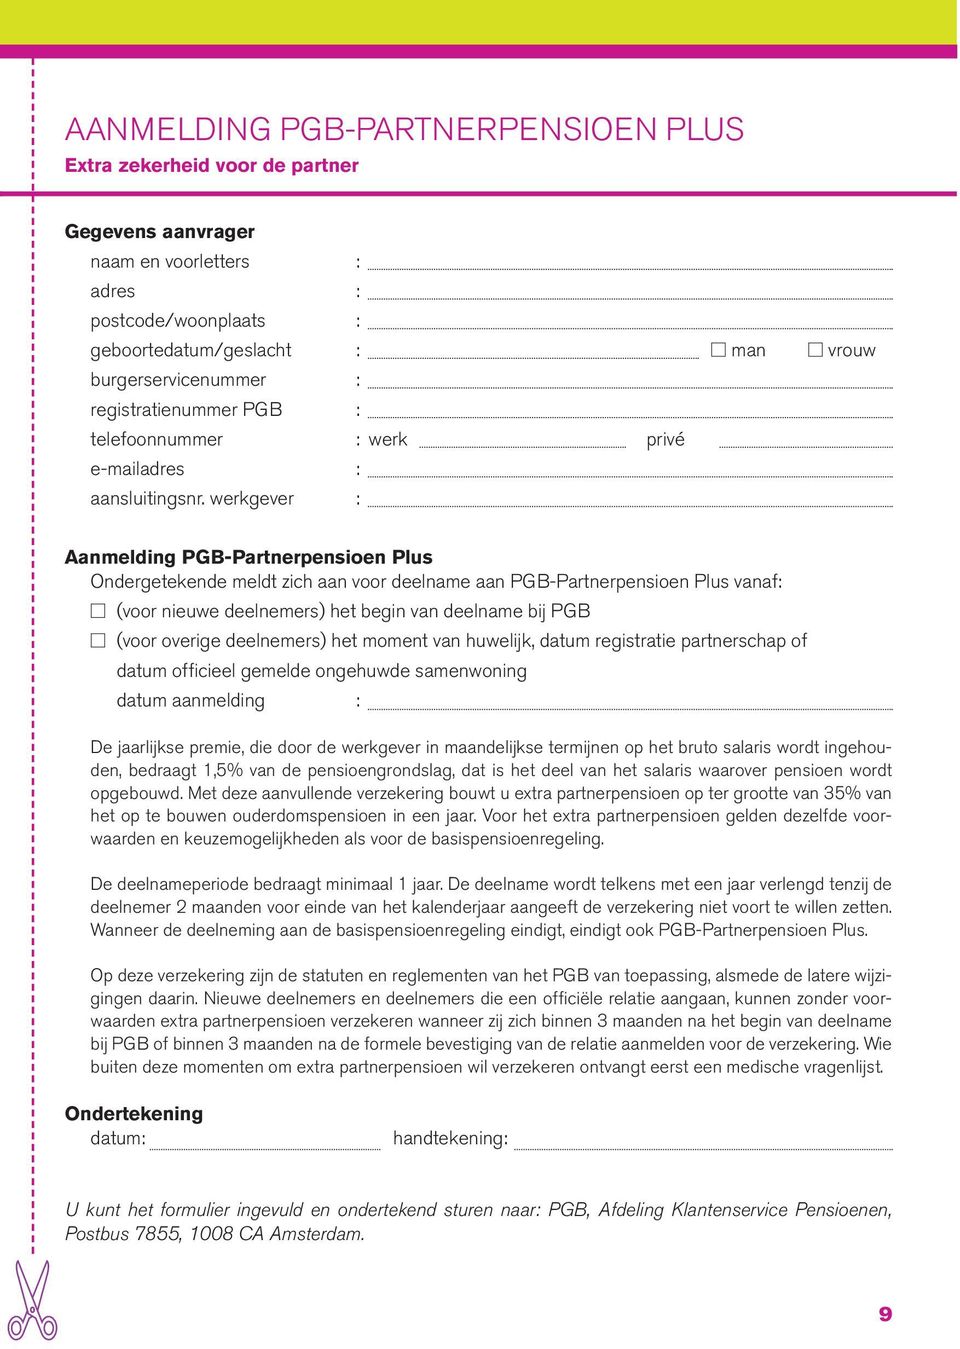 werkgever : Aanmelding PGB-Partnerpensioen Plus Ondergetekende meldt zich aan voor deelname aan PGB-Partnerpensioen Plus vanaf: (voor nieuwe deelnemers) het begin van deelname bij PGB (voor overige